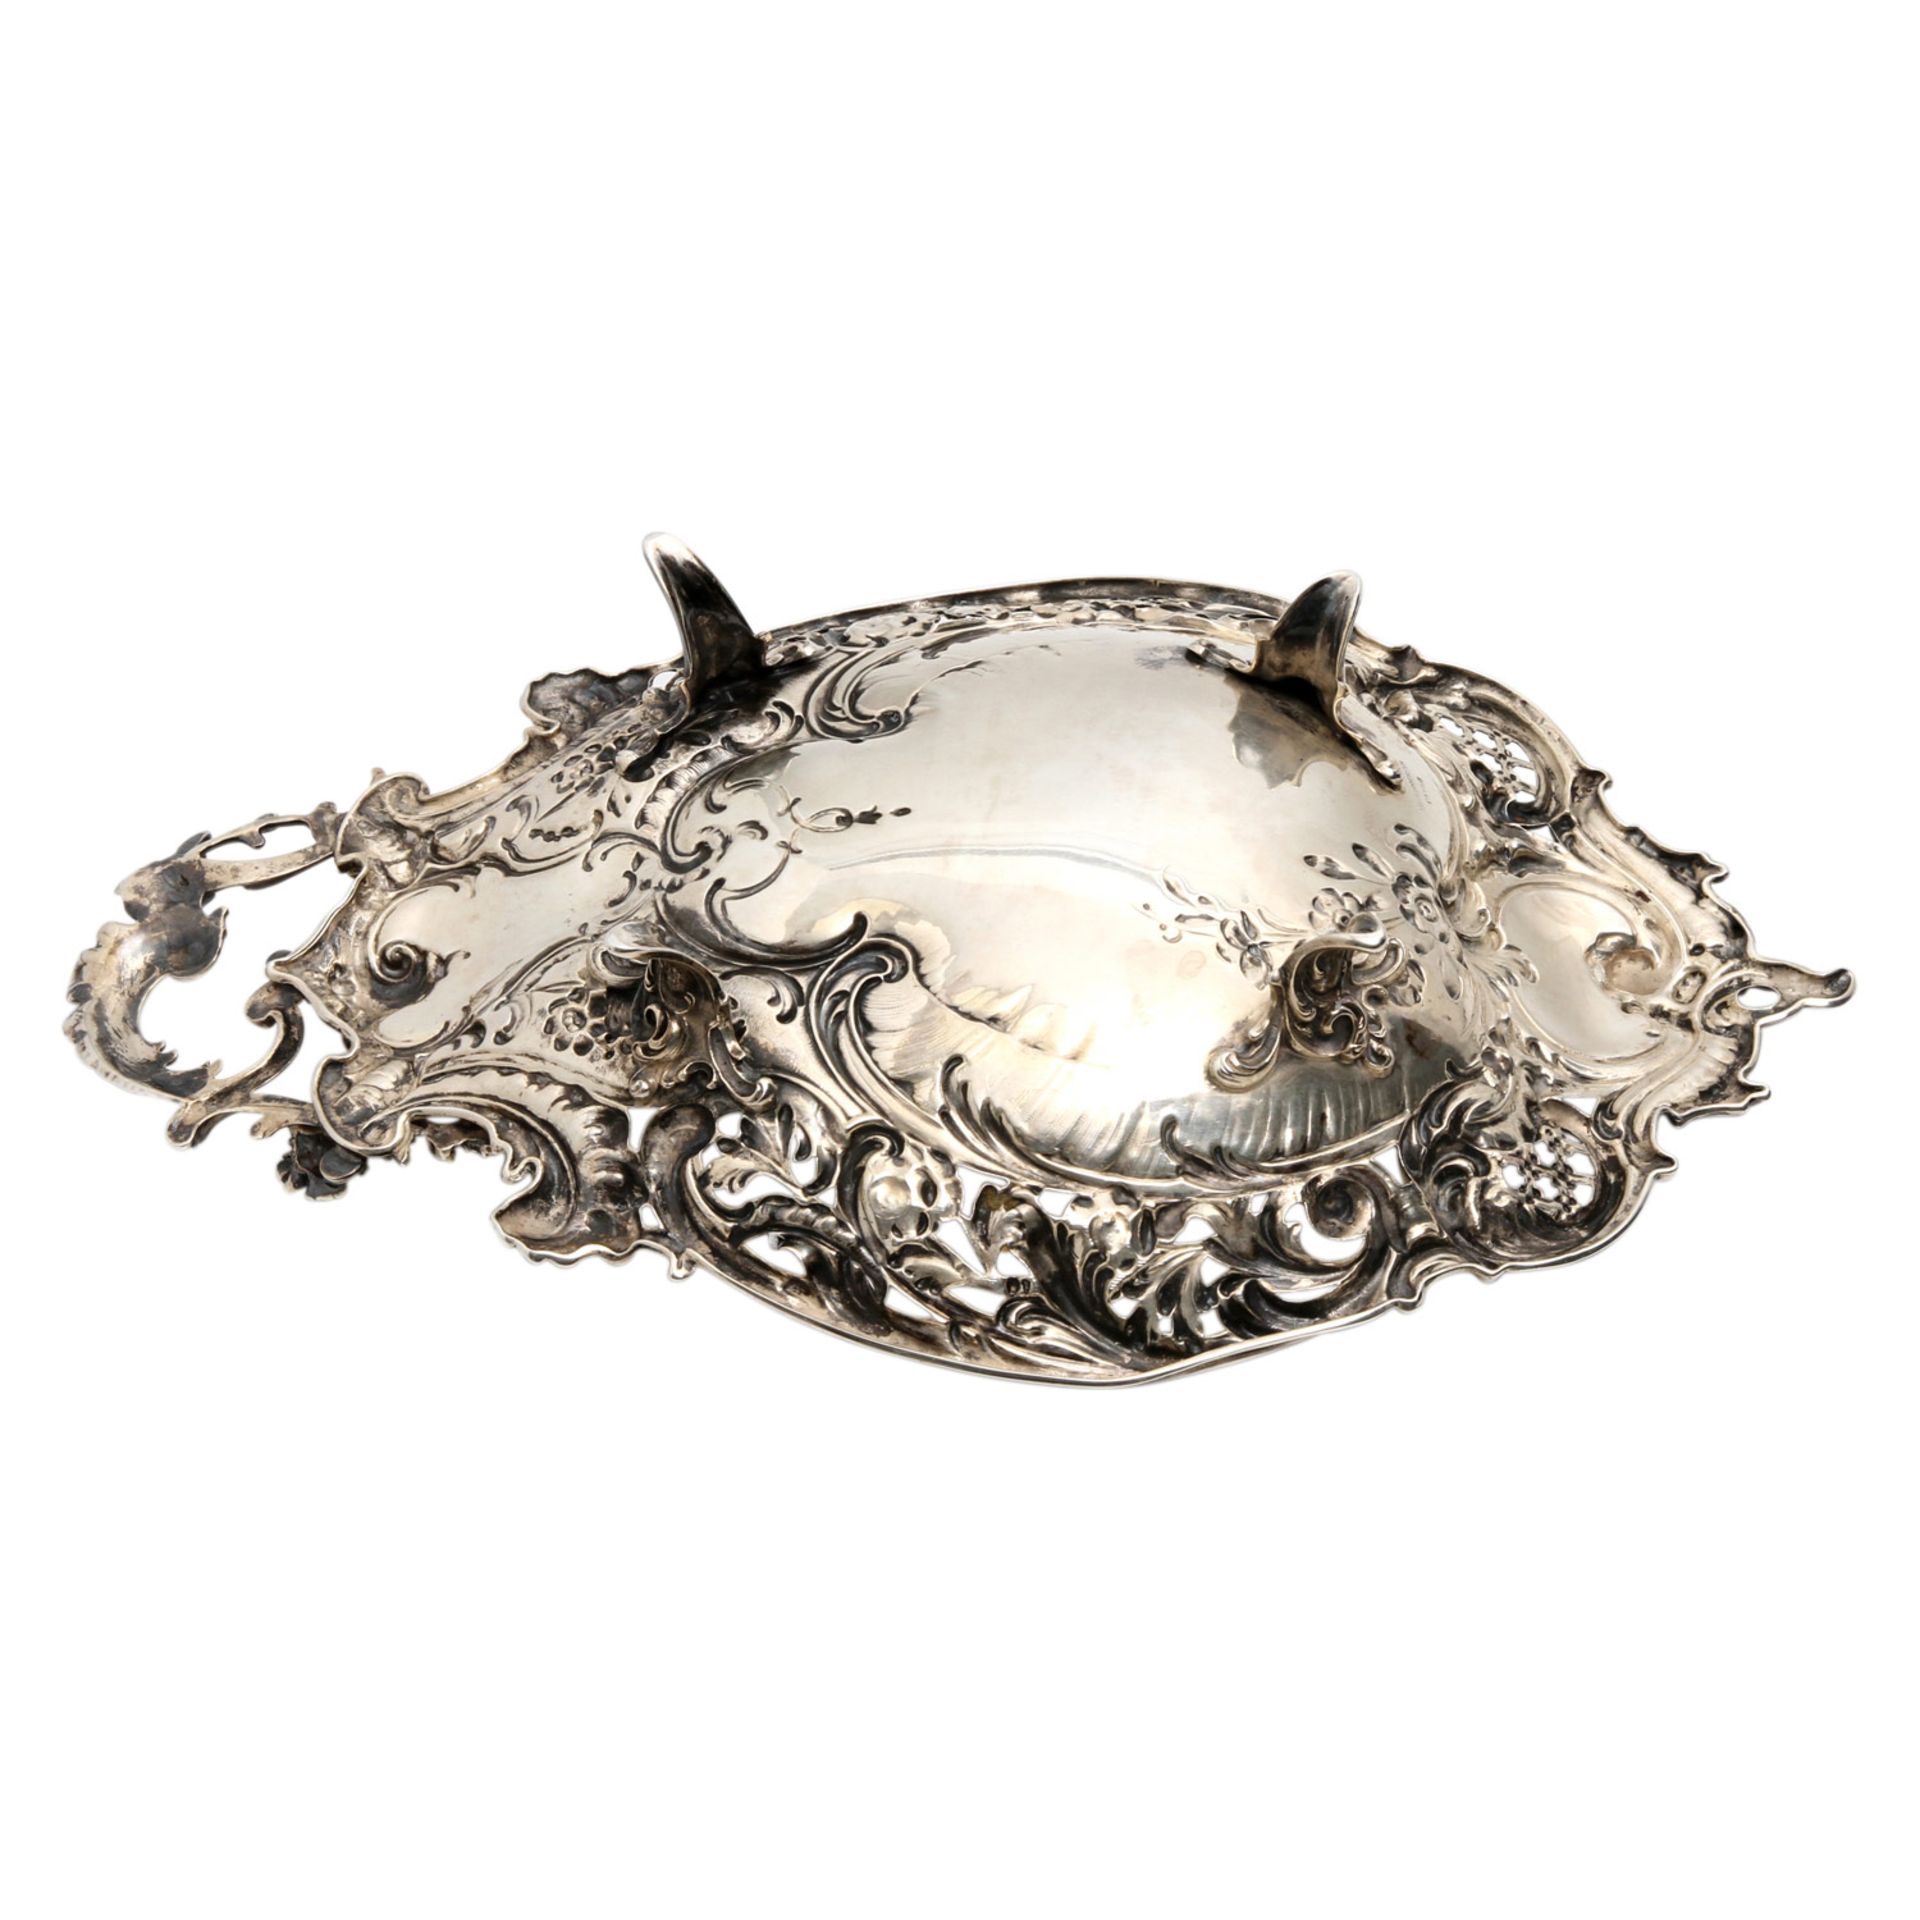 BRUCKMANN Prunkschale, 800 Silber, wohl vor 1900. Üppig vegetabil gestaltete Schale, Juwelierzeichen - Bild 5 aus 8